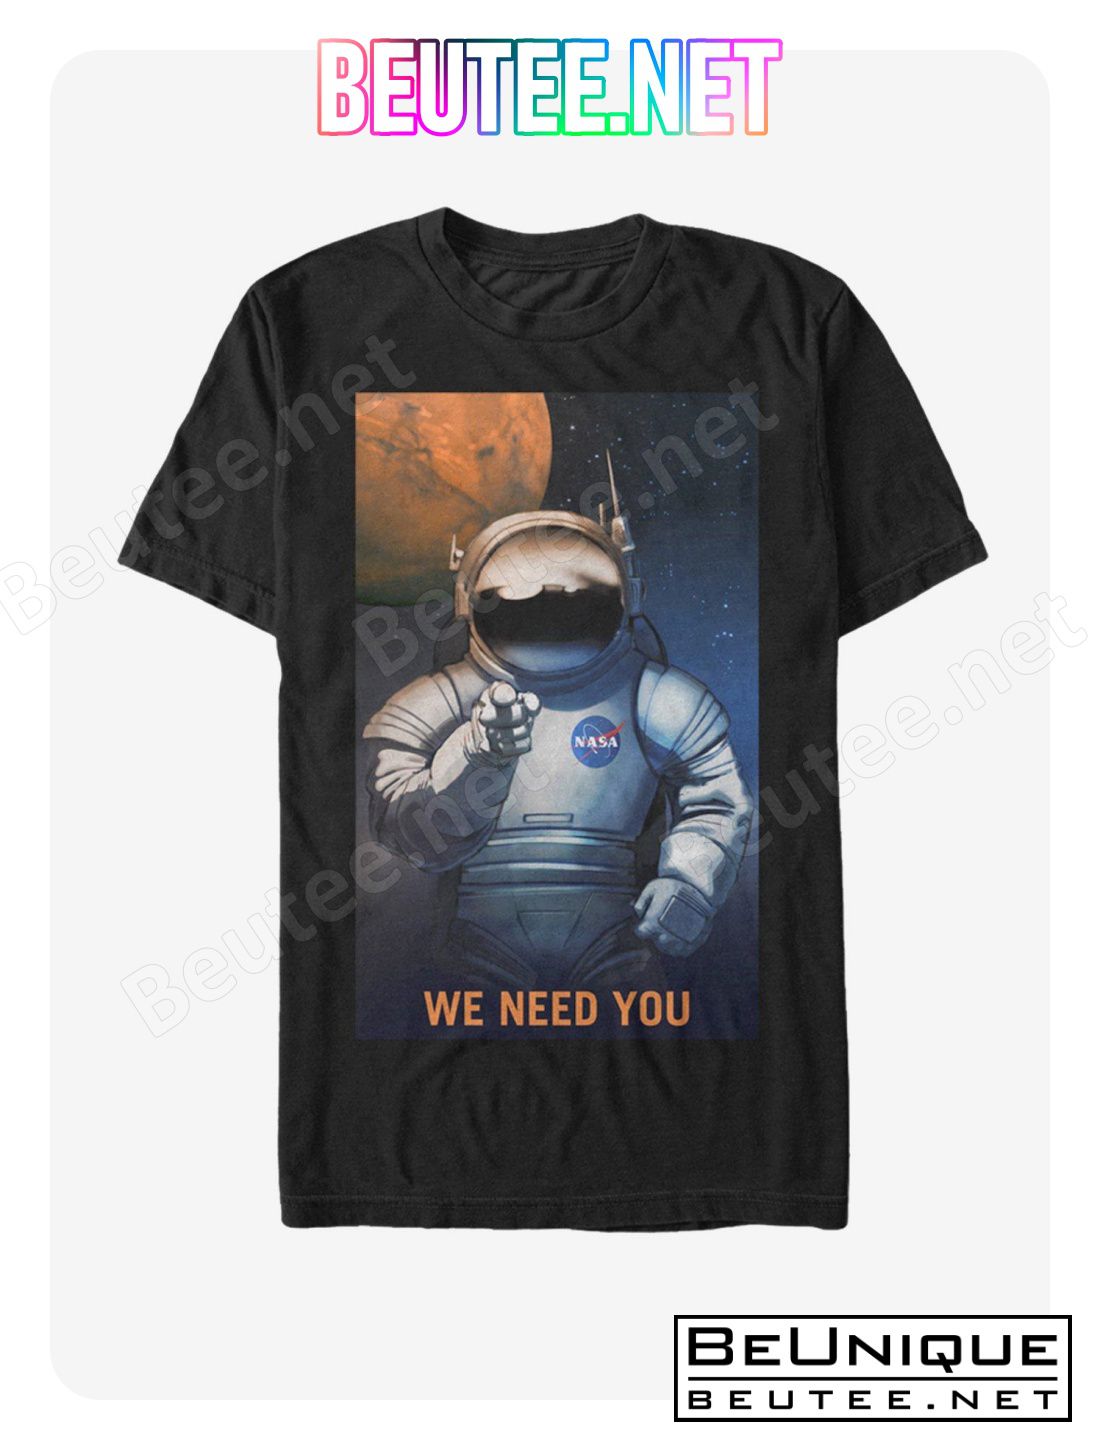 NASA Mars Needs You T-Shirt